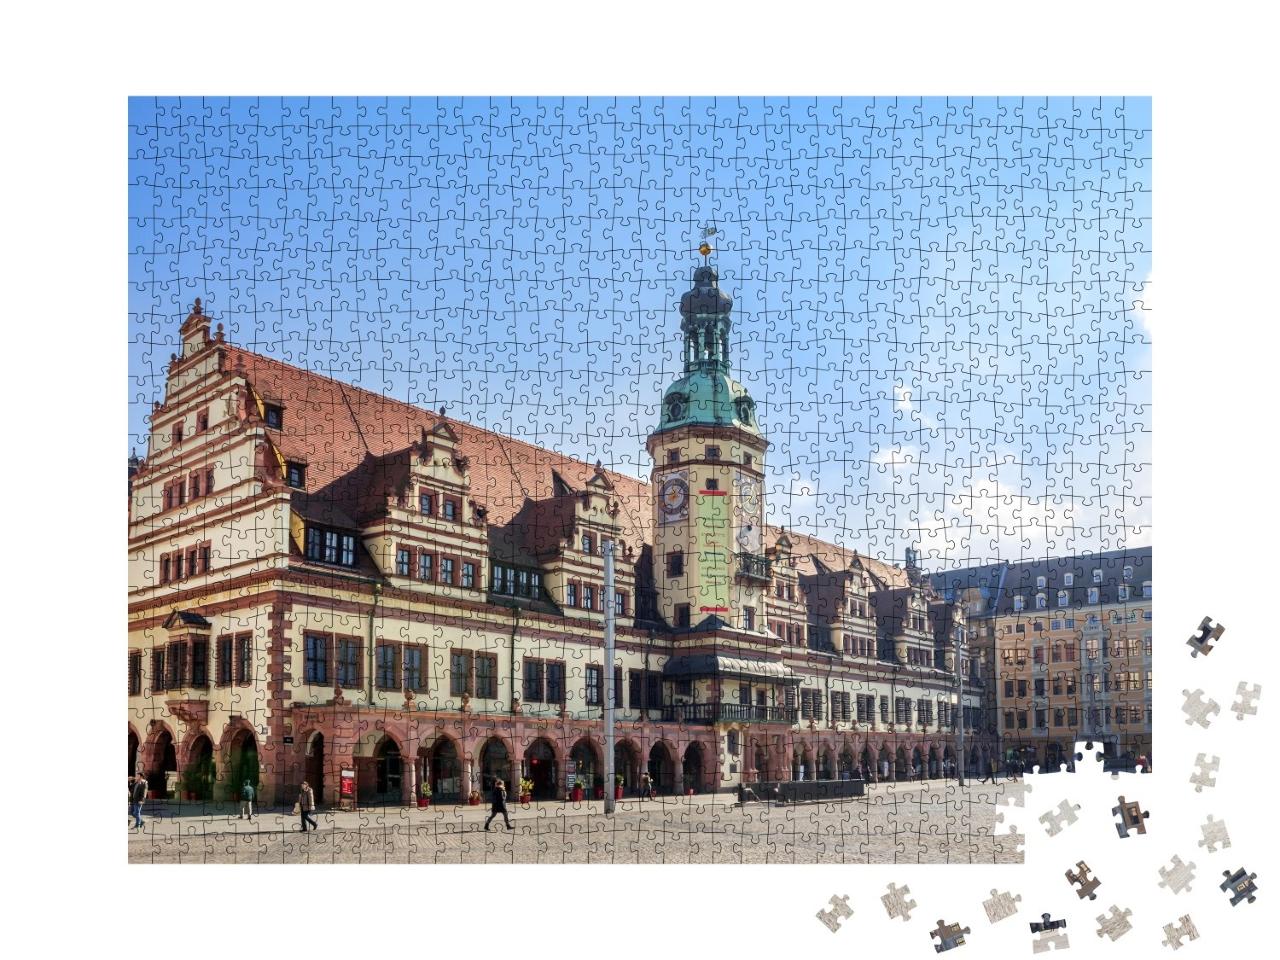 Puzzle de 1000 pièces « Hôtel de ville et marché à Leipzig »